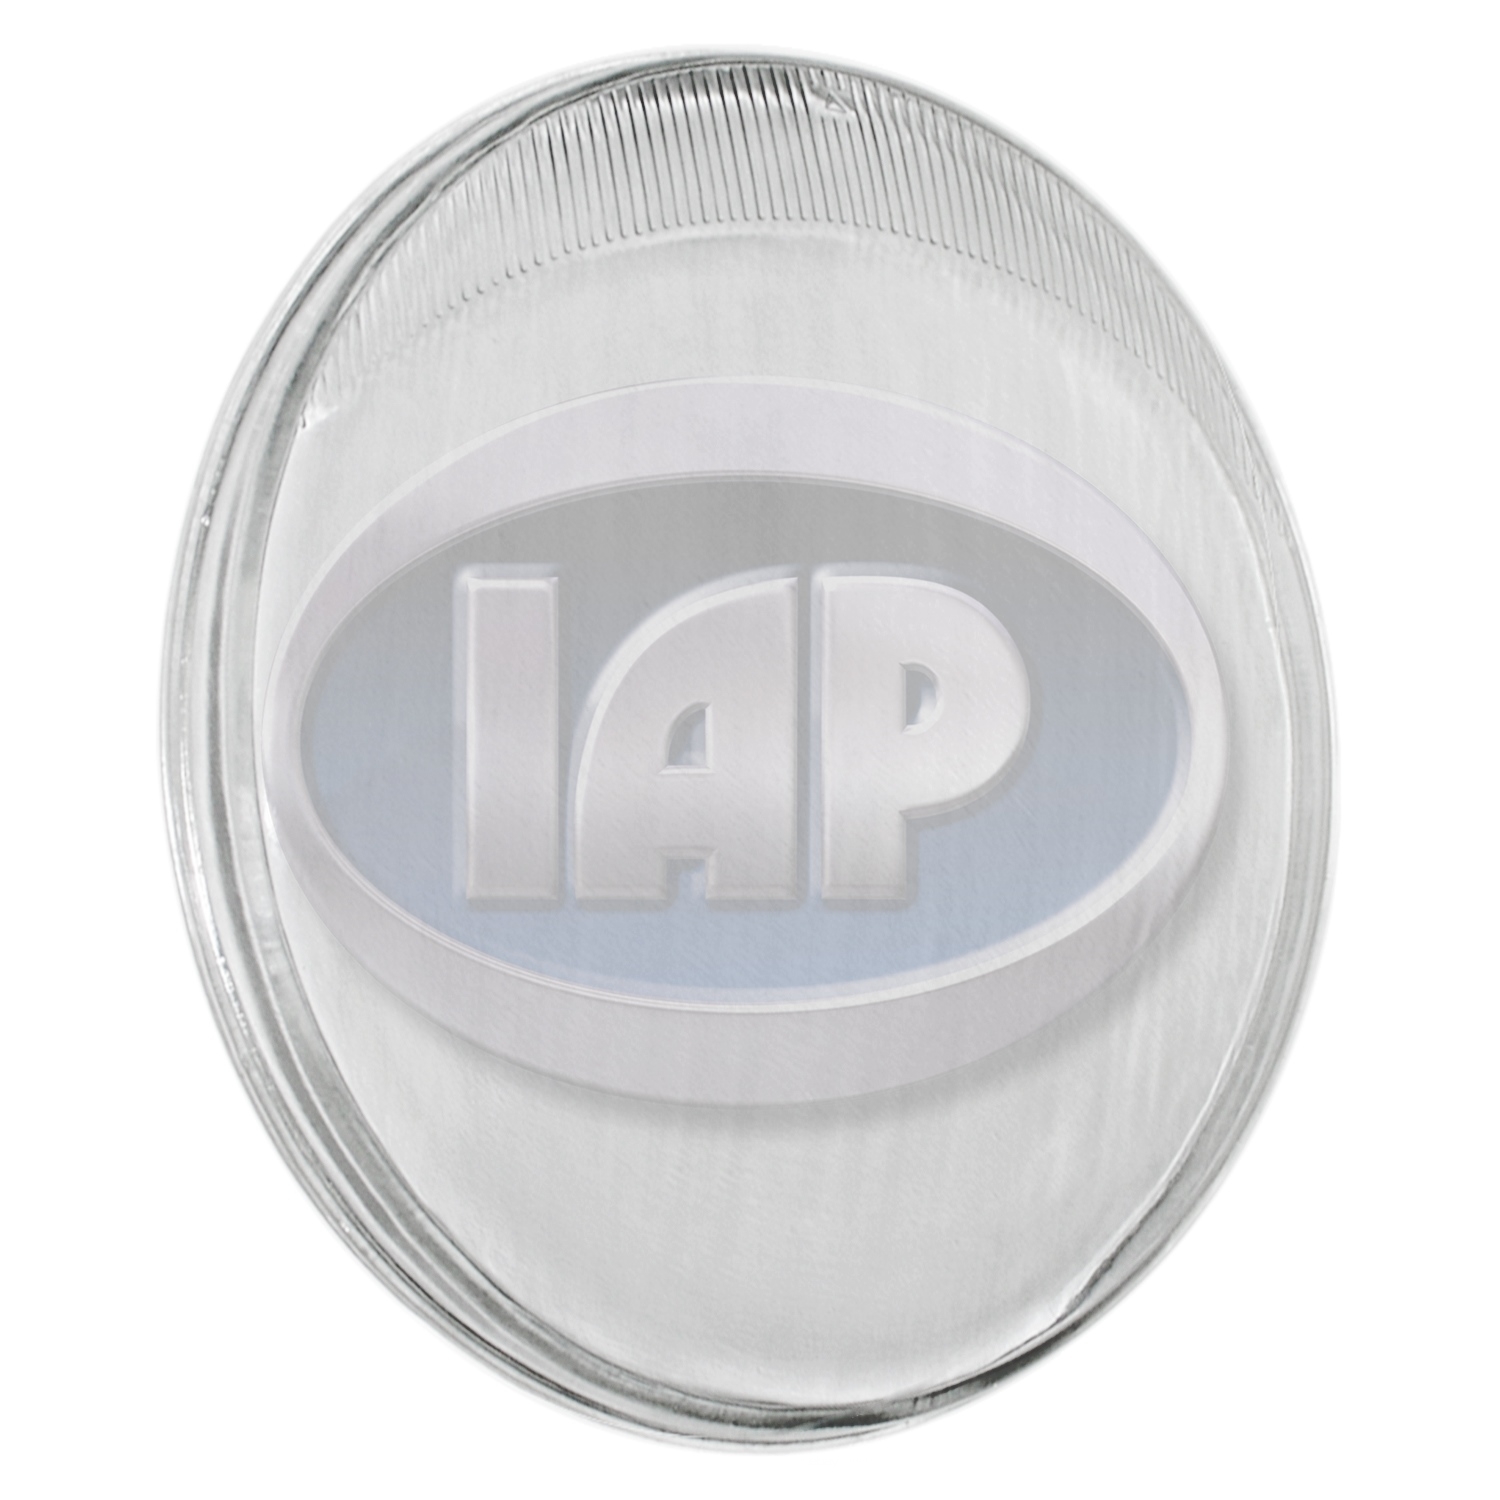 IAP/KUHLTEK MOTORWERKS - Headlight Lens - KMS 111941115H